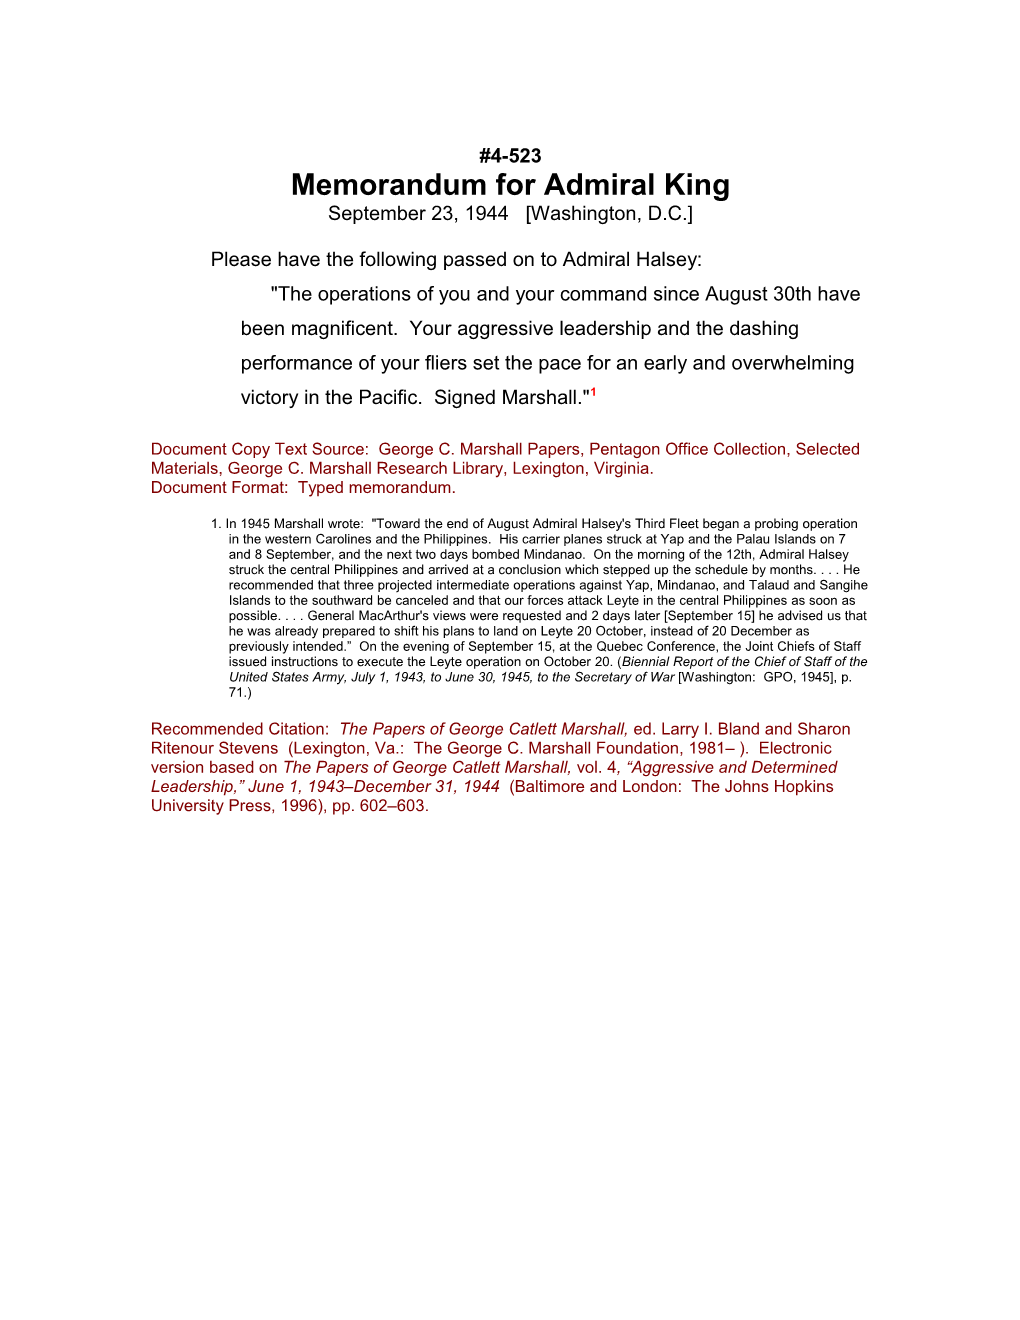 Memorandum for Admiral King